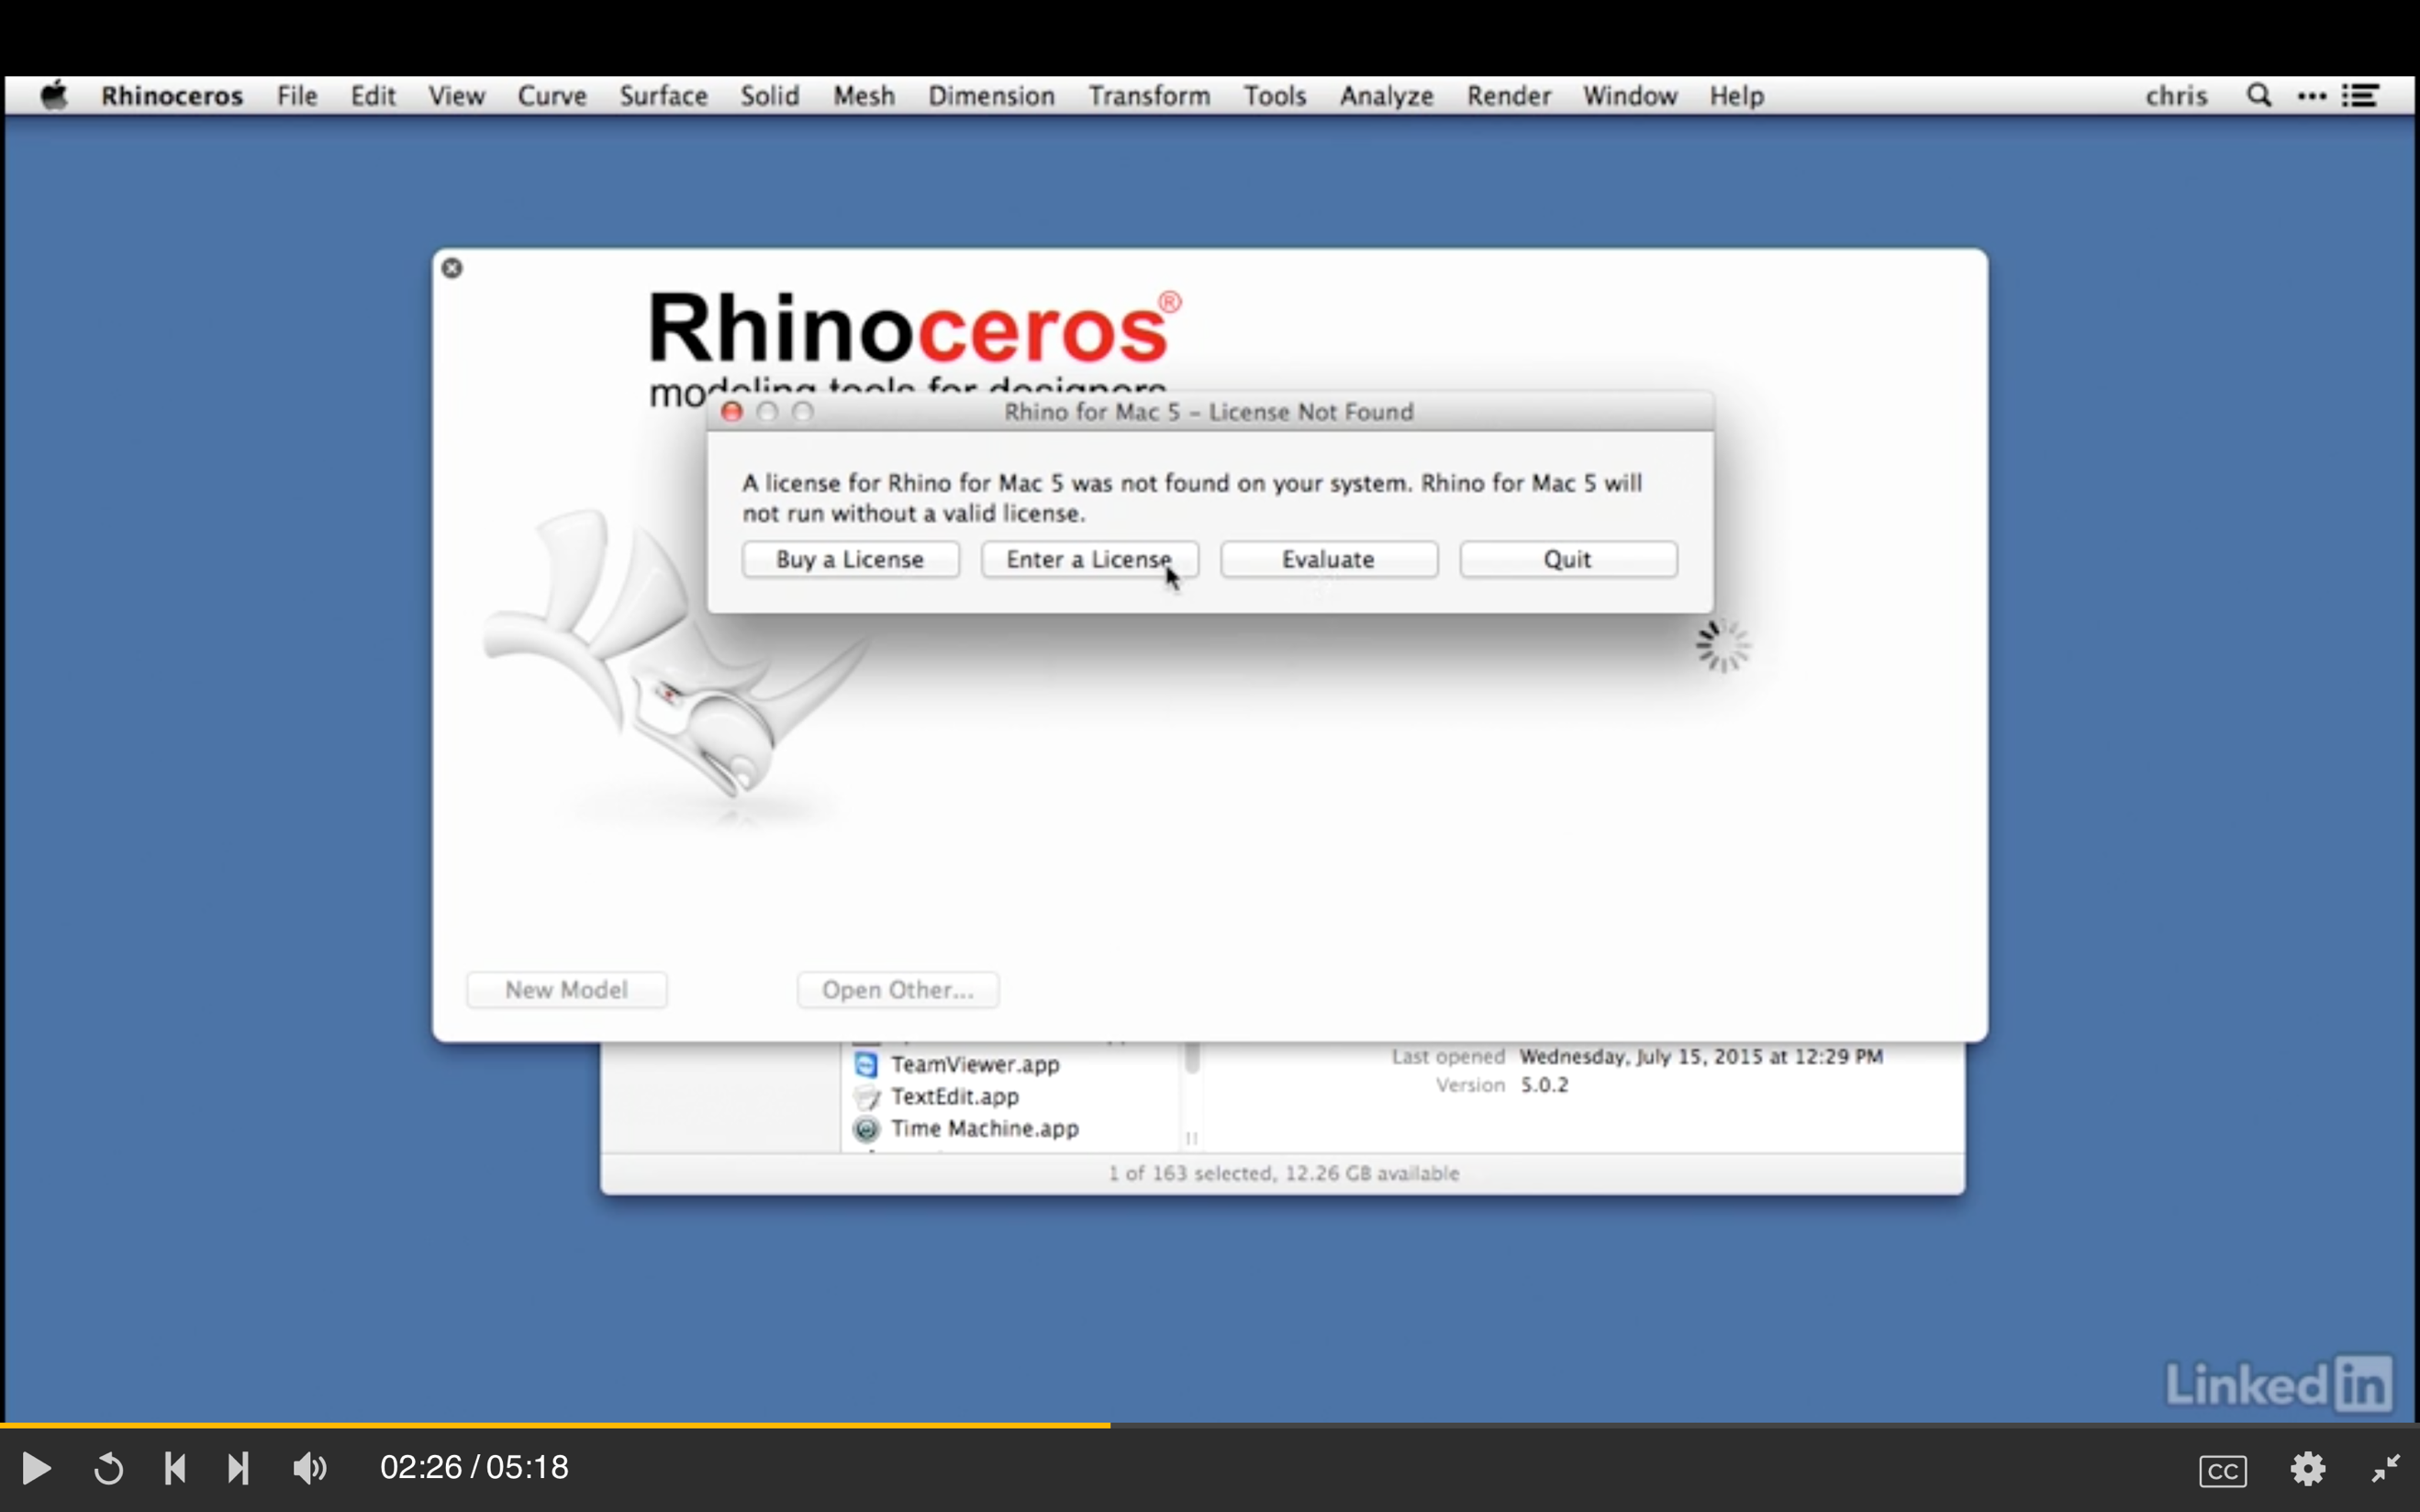 Πώς εγκαθιστούμε το Rhino (download). Το πρόγραμμα προσφέρεται δωρεάν (δοκιμαστική) χρήση για 90 ημέρες. Πηγαίνετε στην ηλεκτρονική διεύθυνση: https://www.rhino3d.